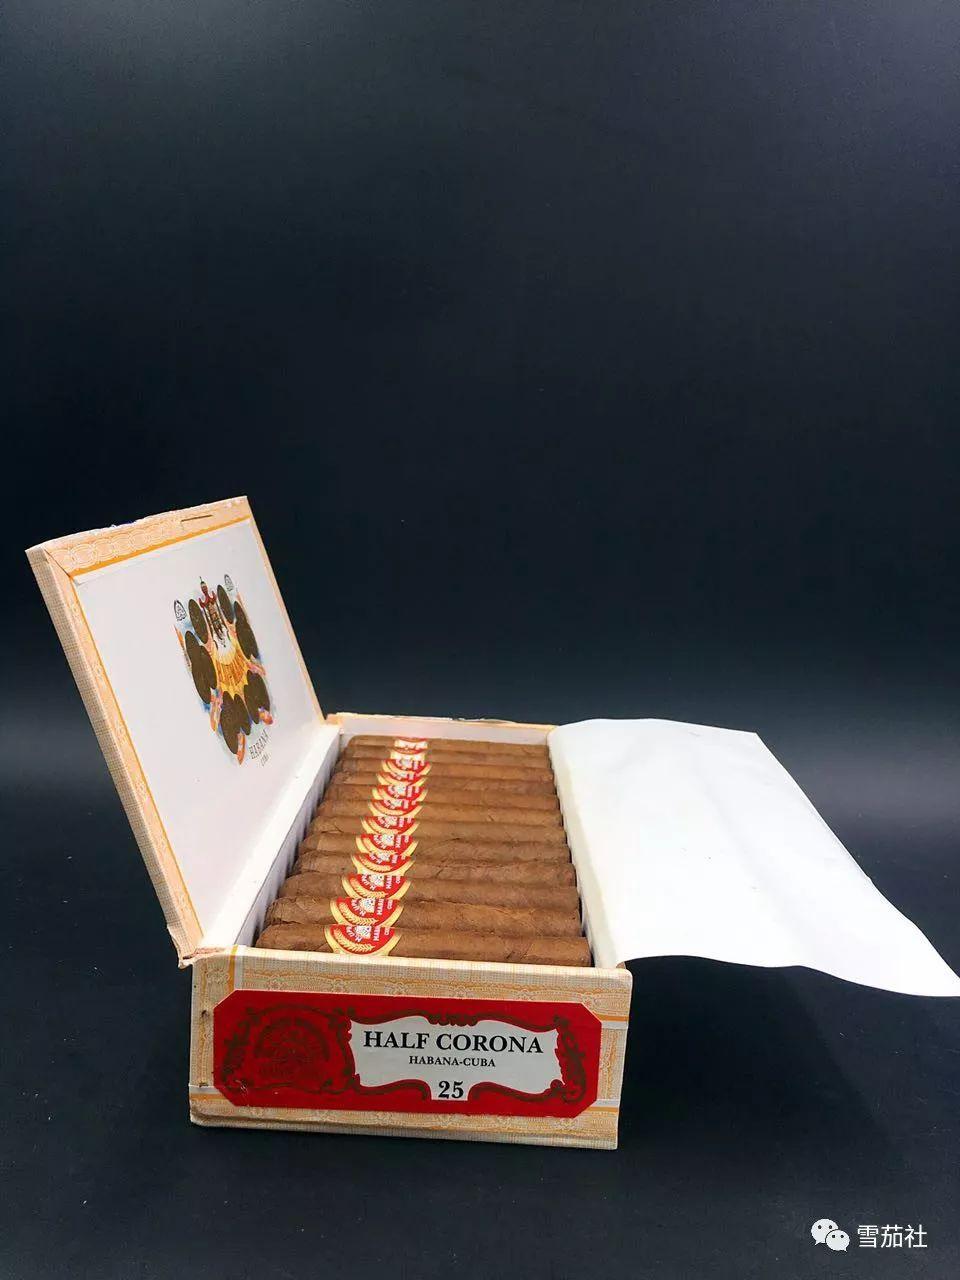 来个半小时的雪茄时光 品鉴古巴乌普曼半皇冠雪茄